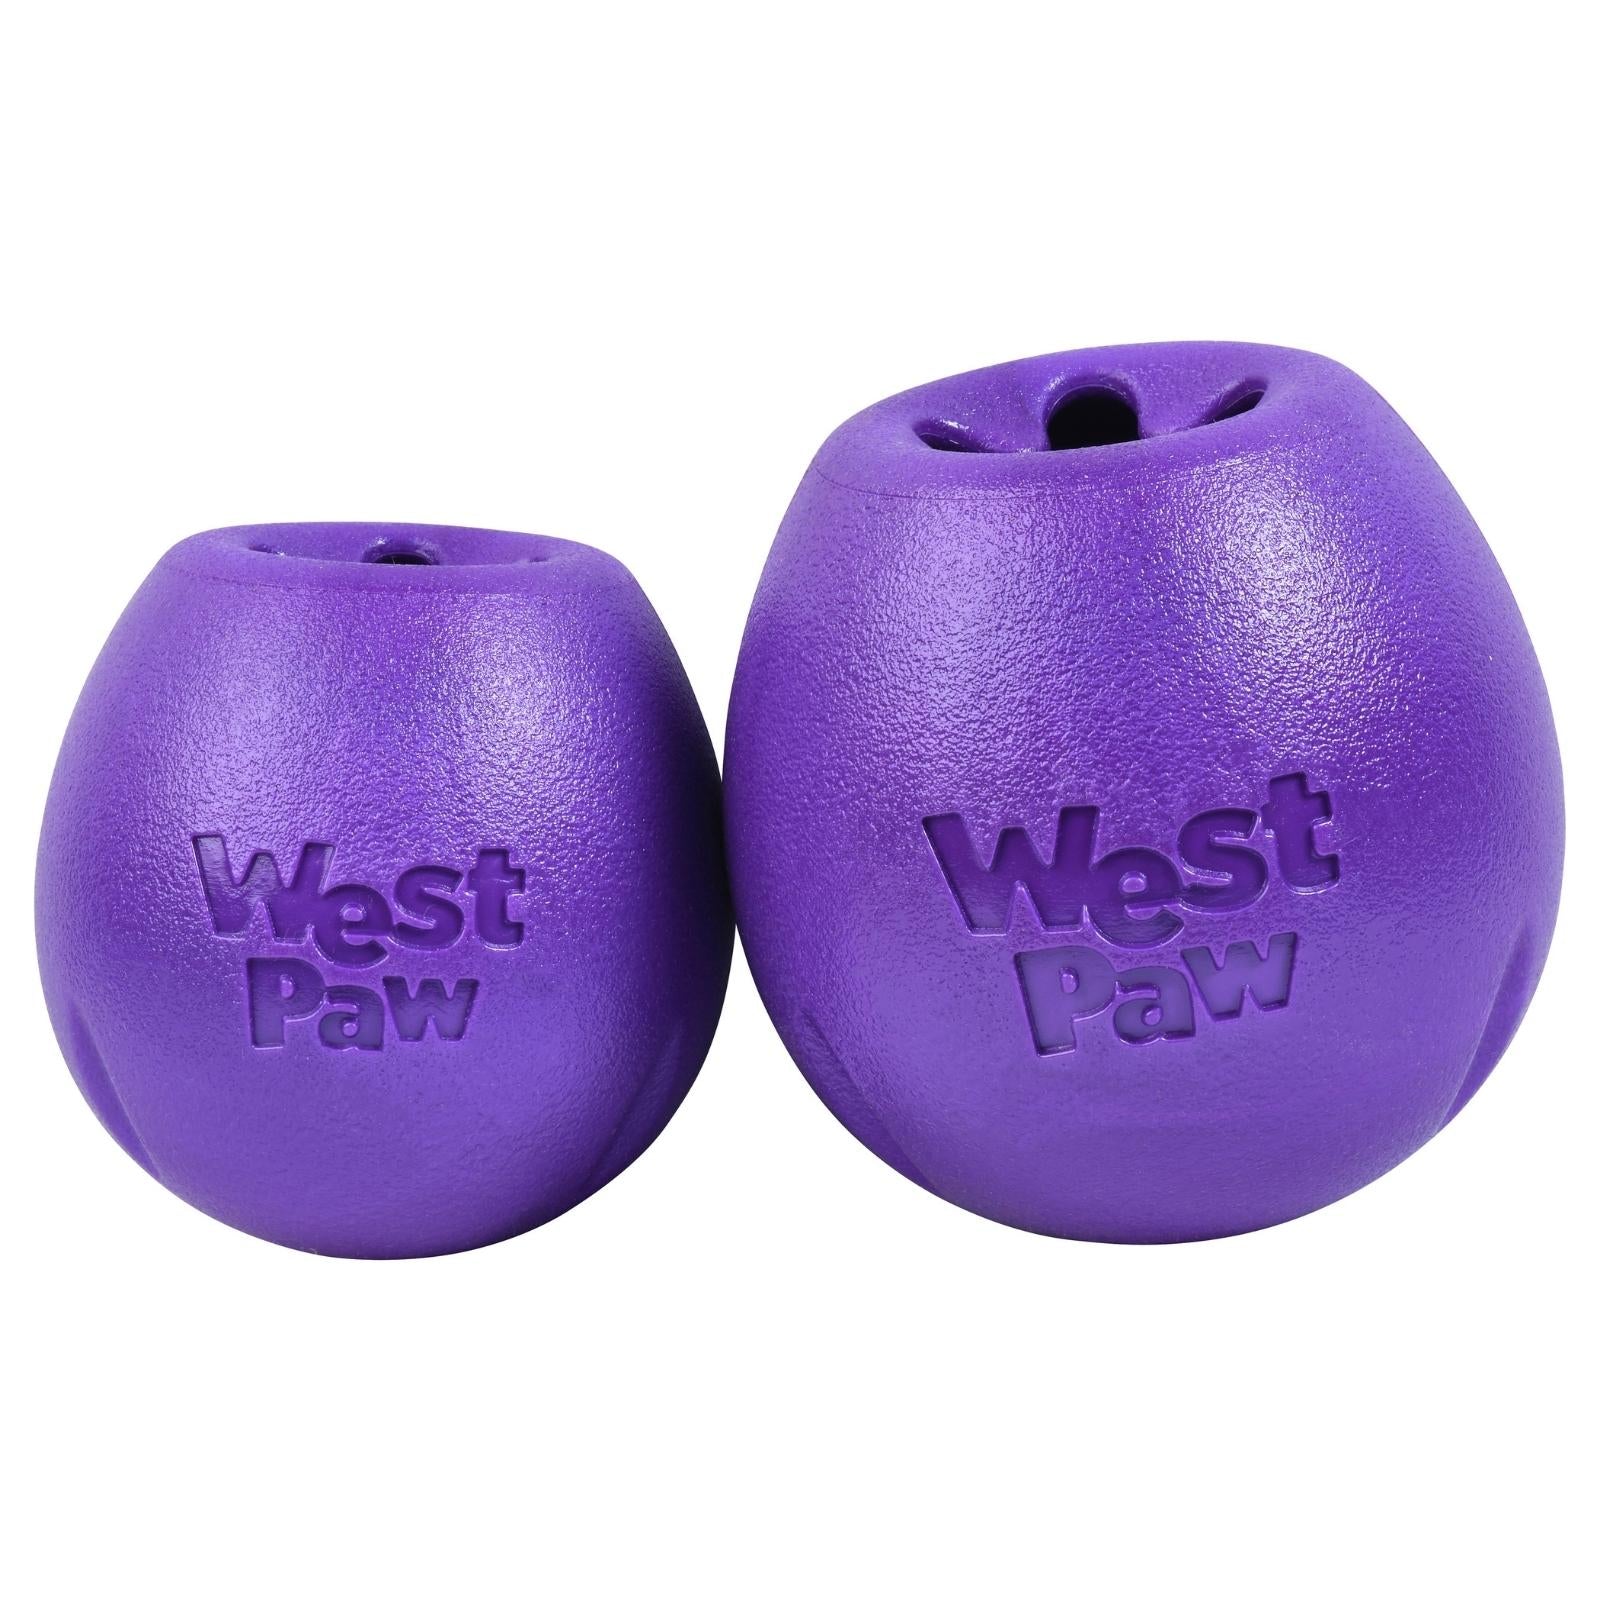 RUMBL de West Paw® color Morado - Juguete Dispensador de Premios y Croquetas para Perros